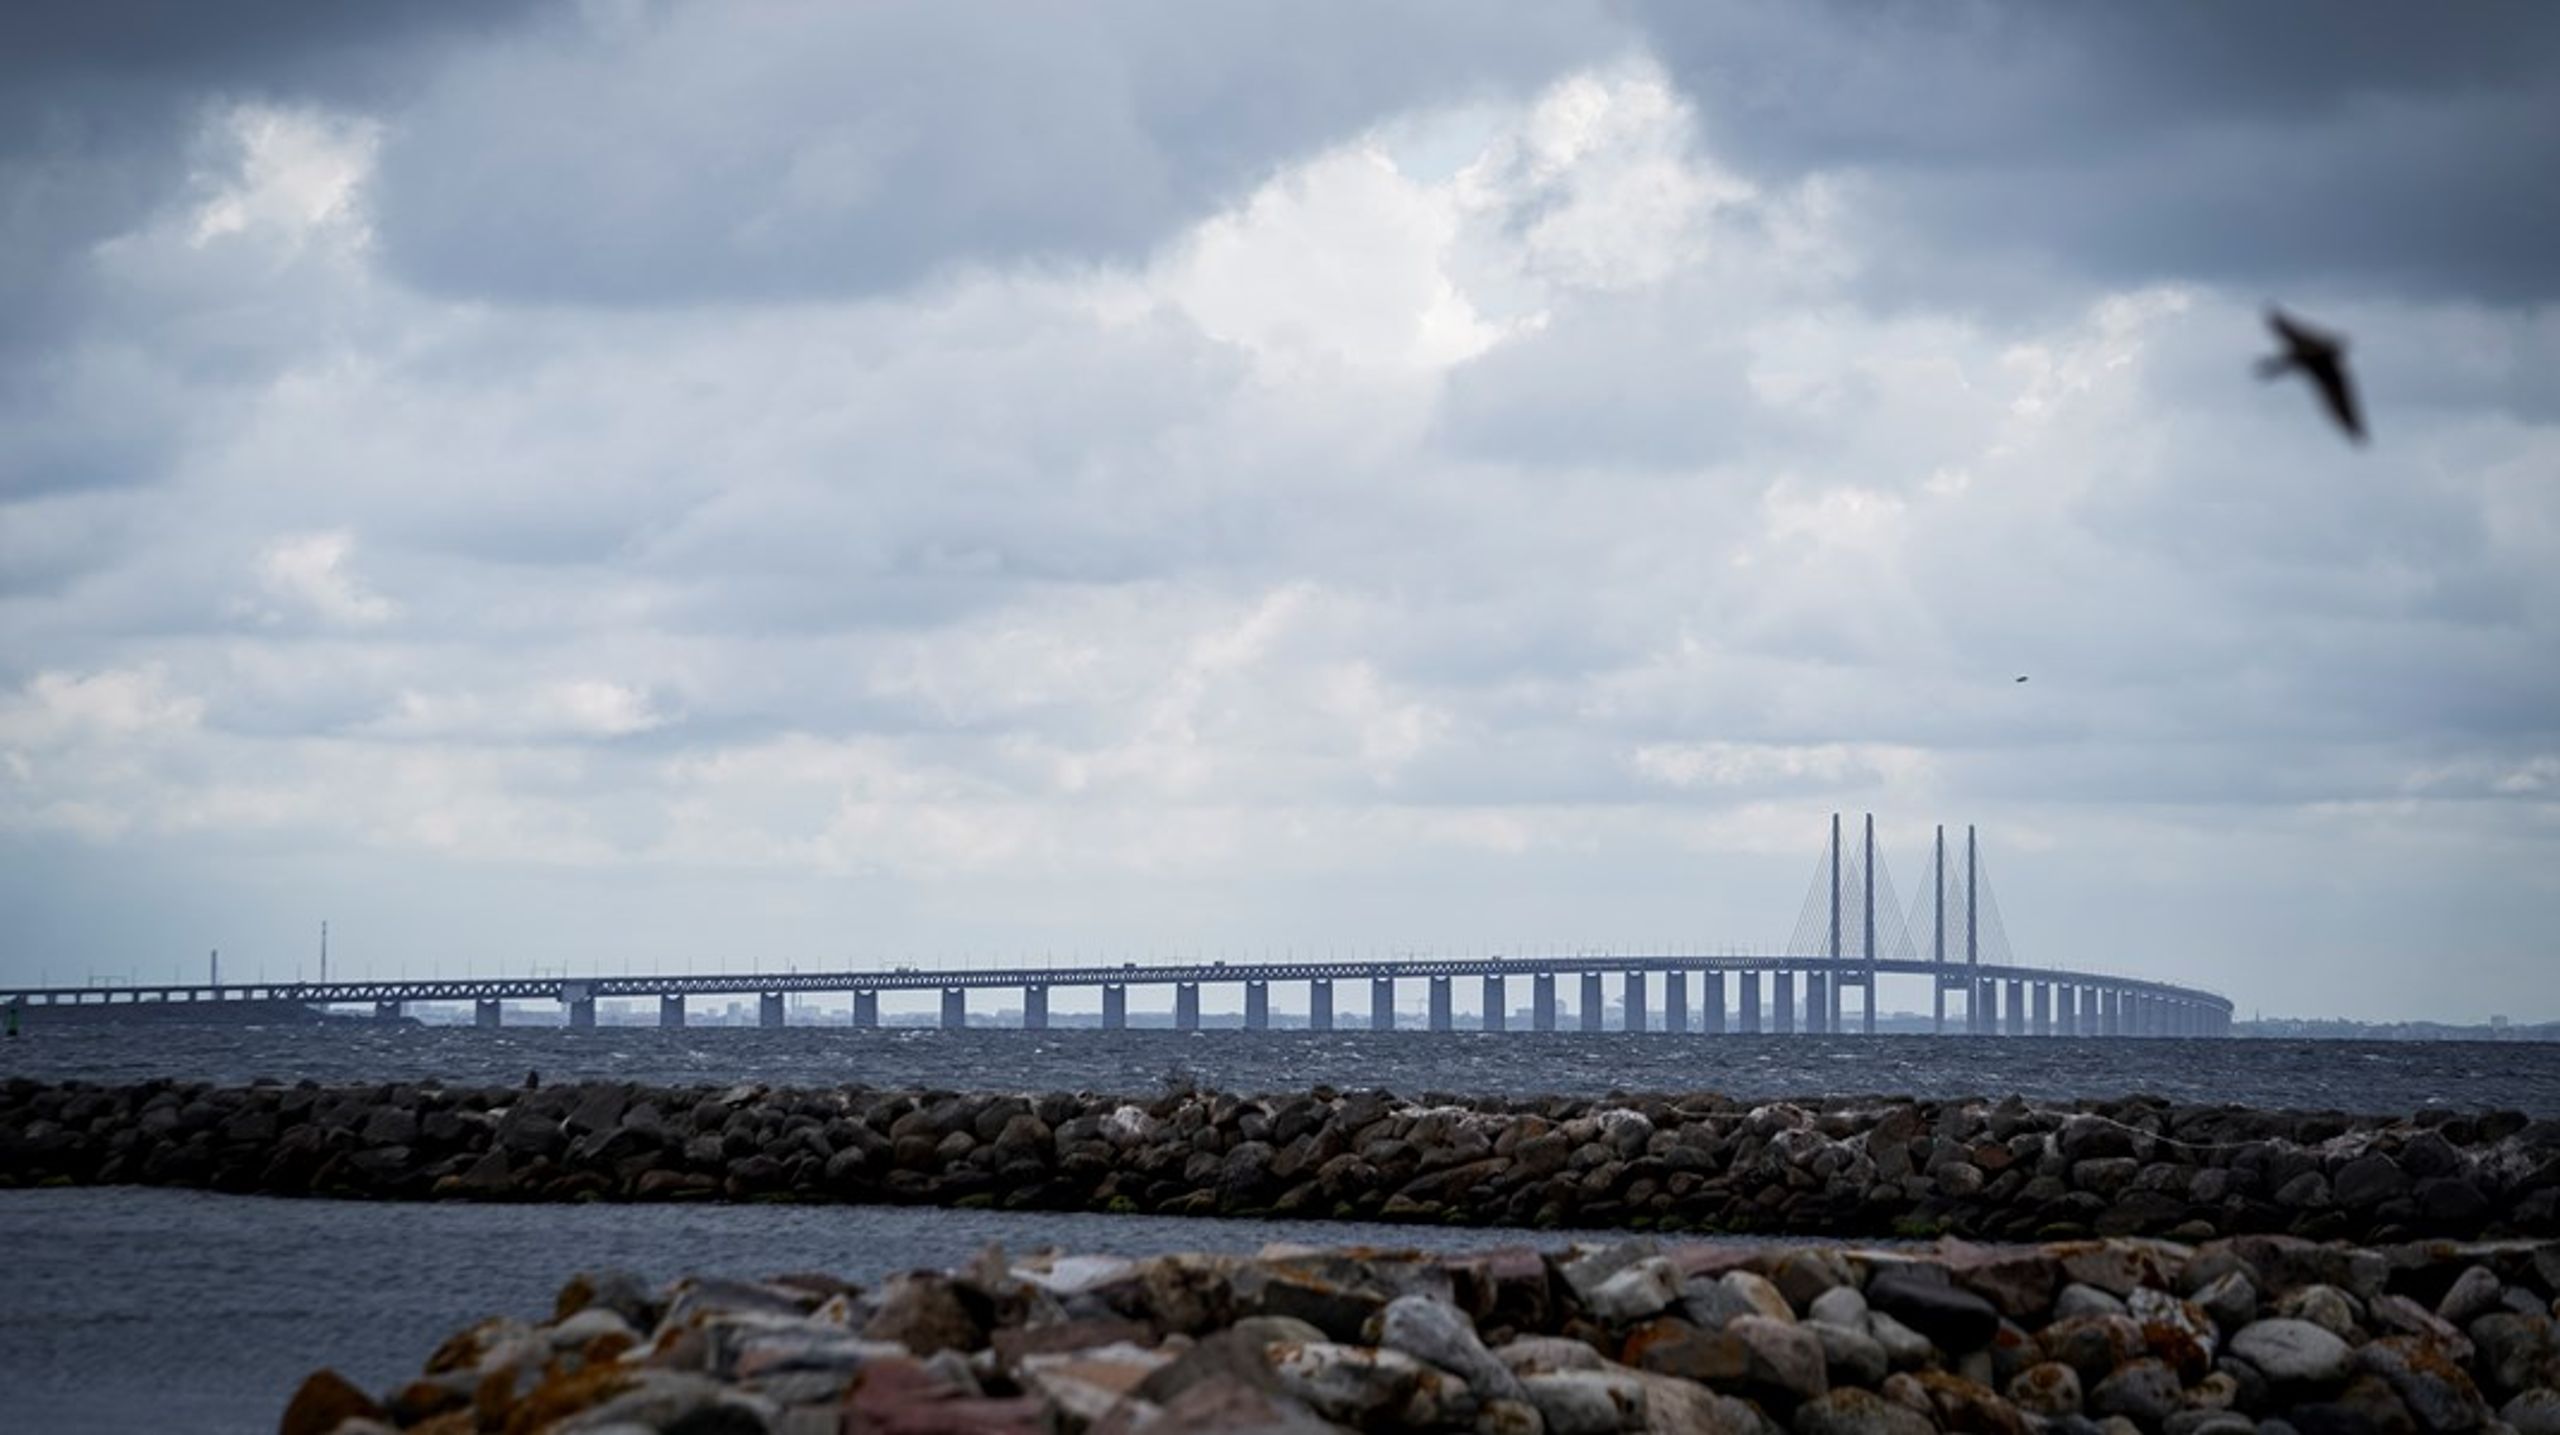 Så længe der kun eksisterer én fast forbindelse,
som knytter Sverige sammen med resten af Europa, er Sverige sårbare overfor
både simple driftsforstyrrelser men også direkte angreb på Øresundsbroen, skriver Thomas Becker.